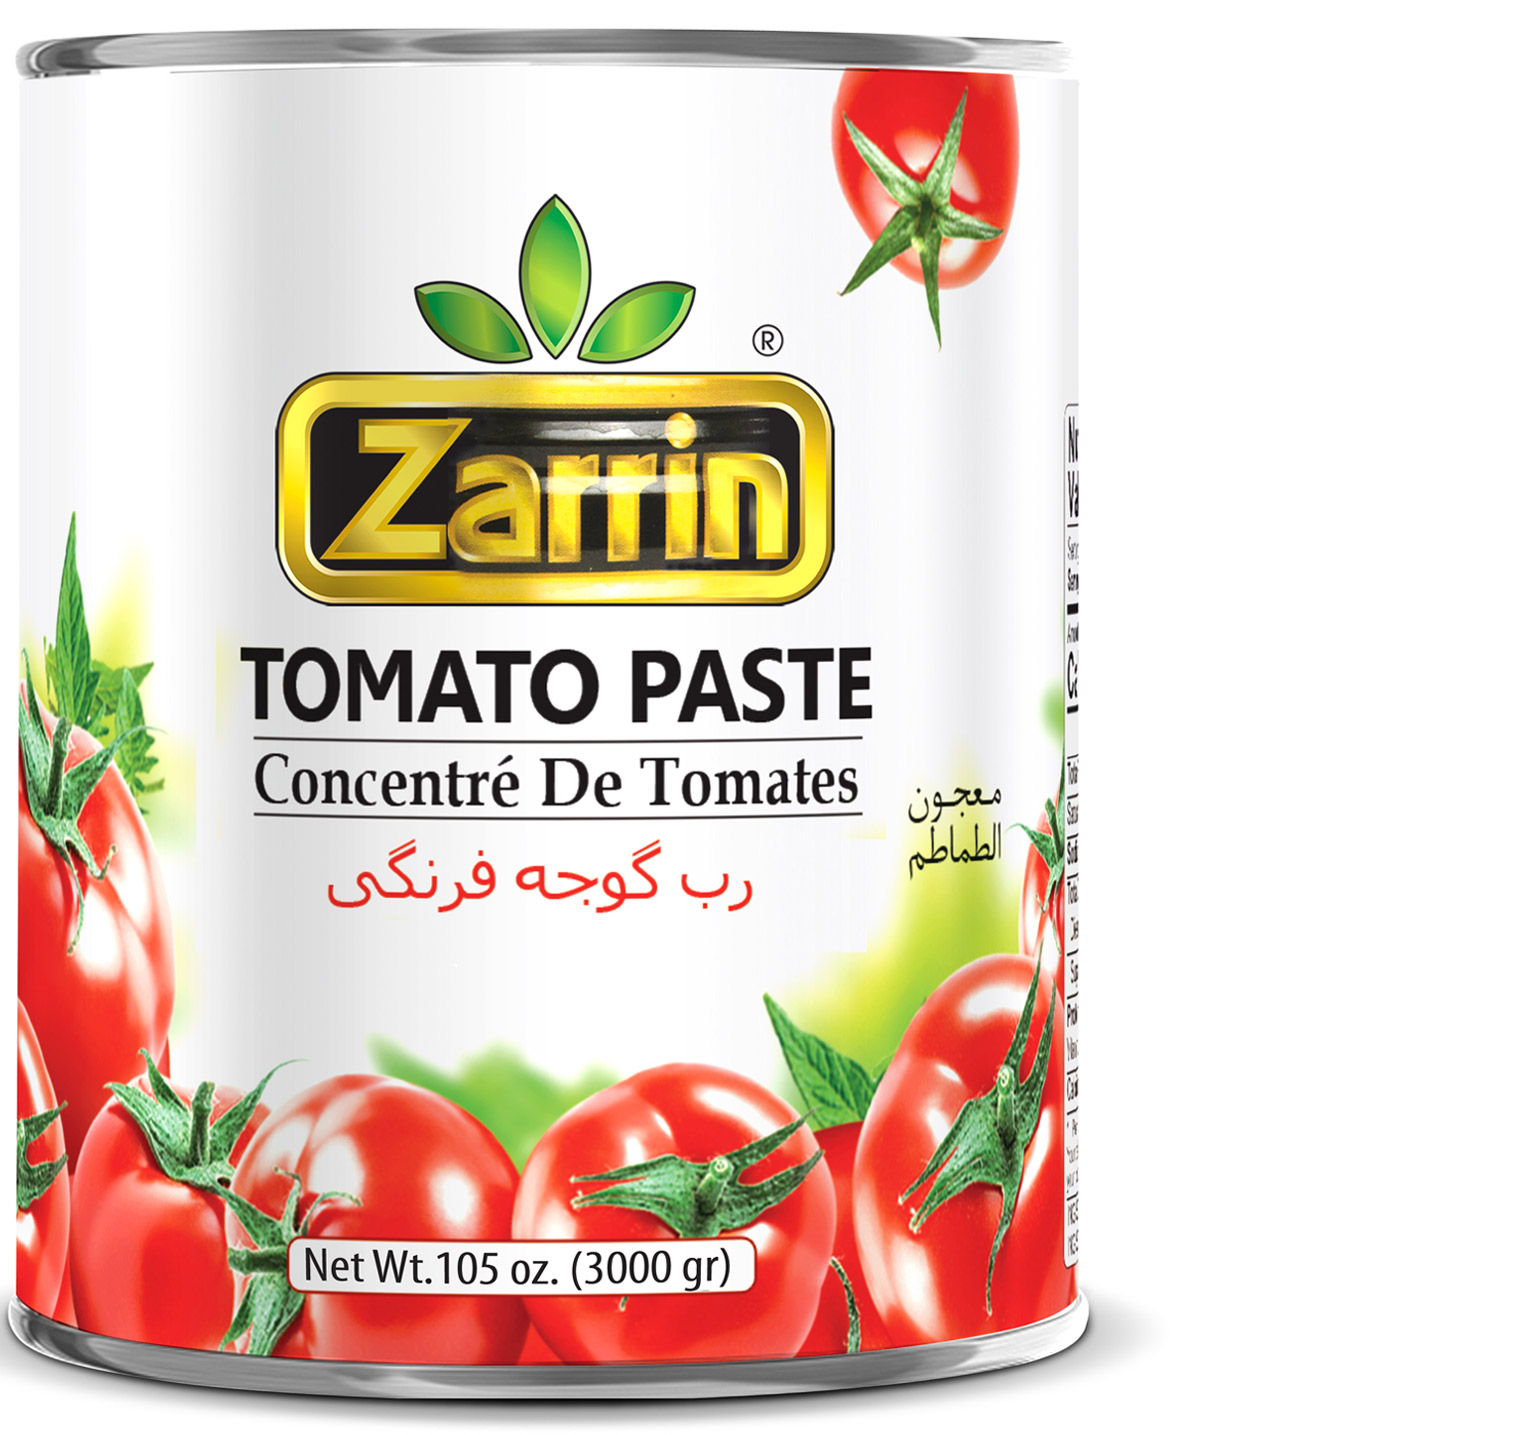 Zarrin tomato paste in 105 oz can.